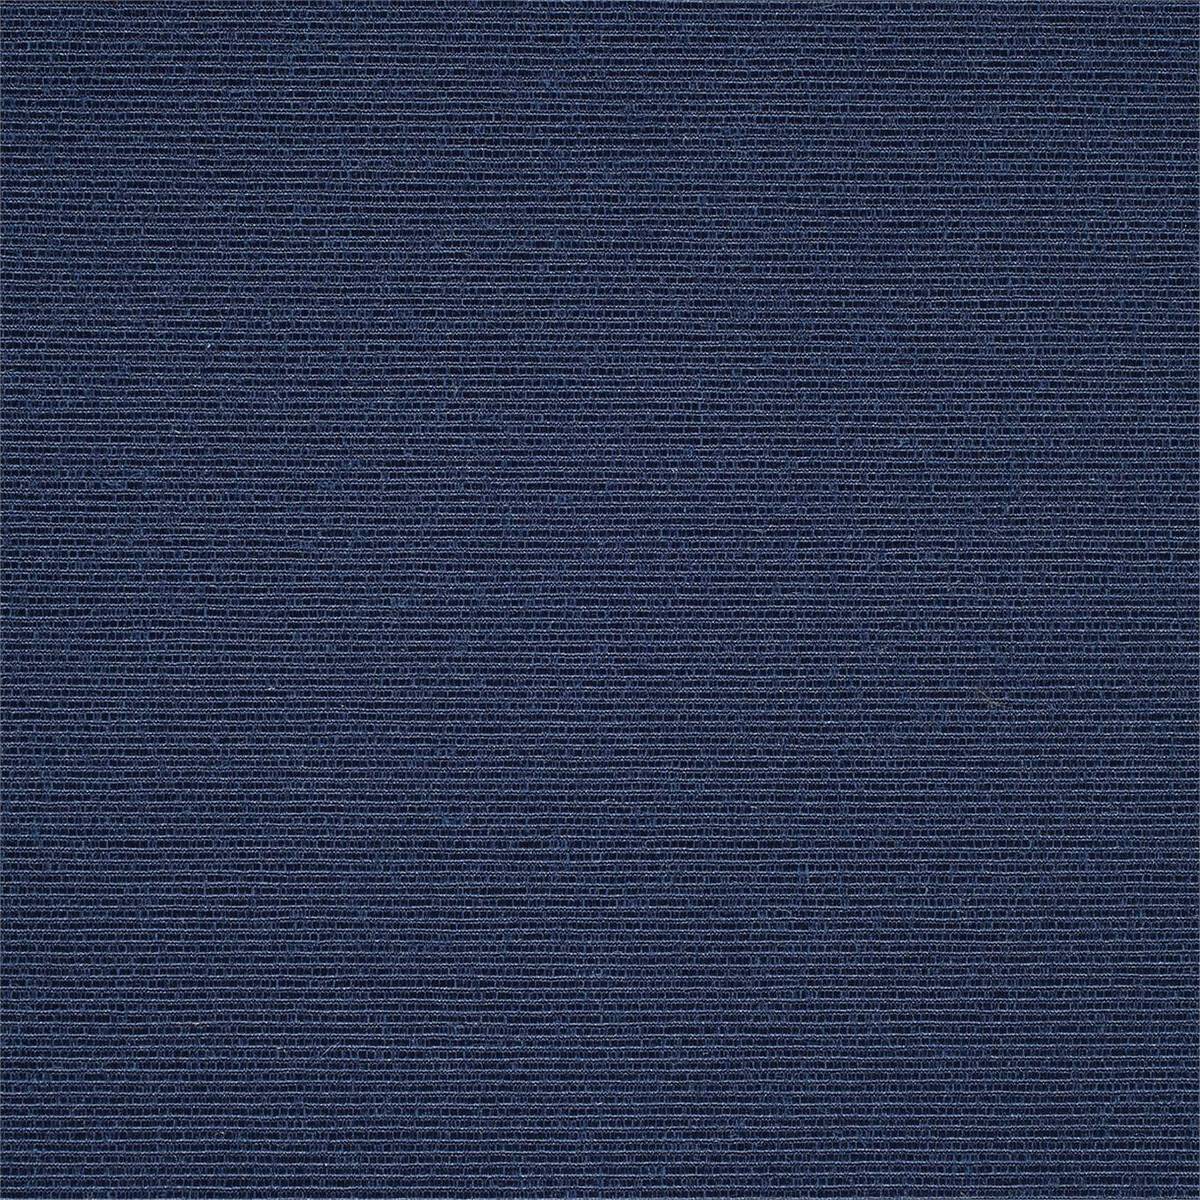 Savano Navy Fabric by Harlequin